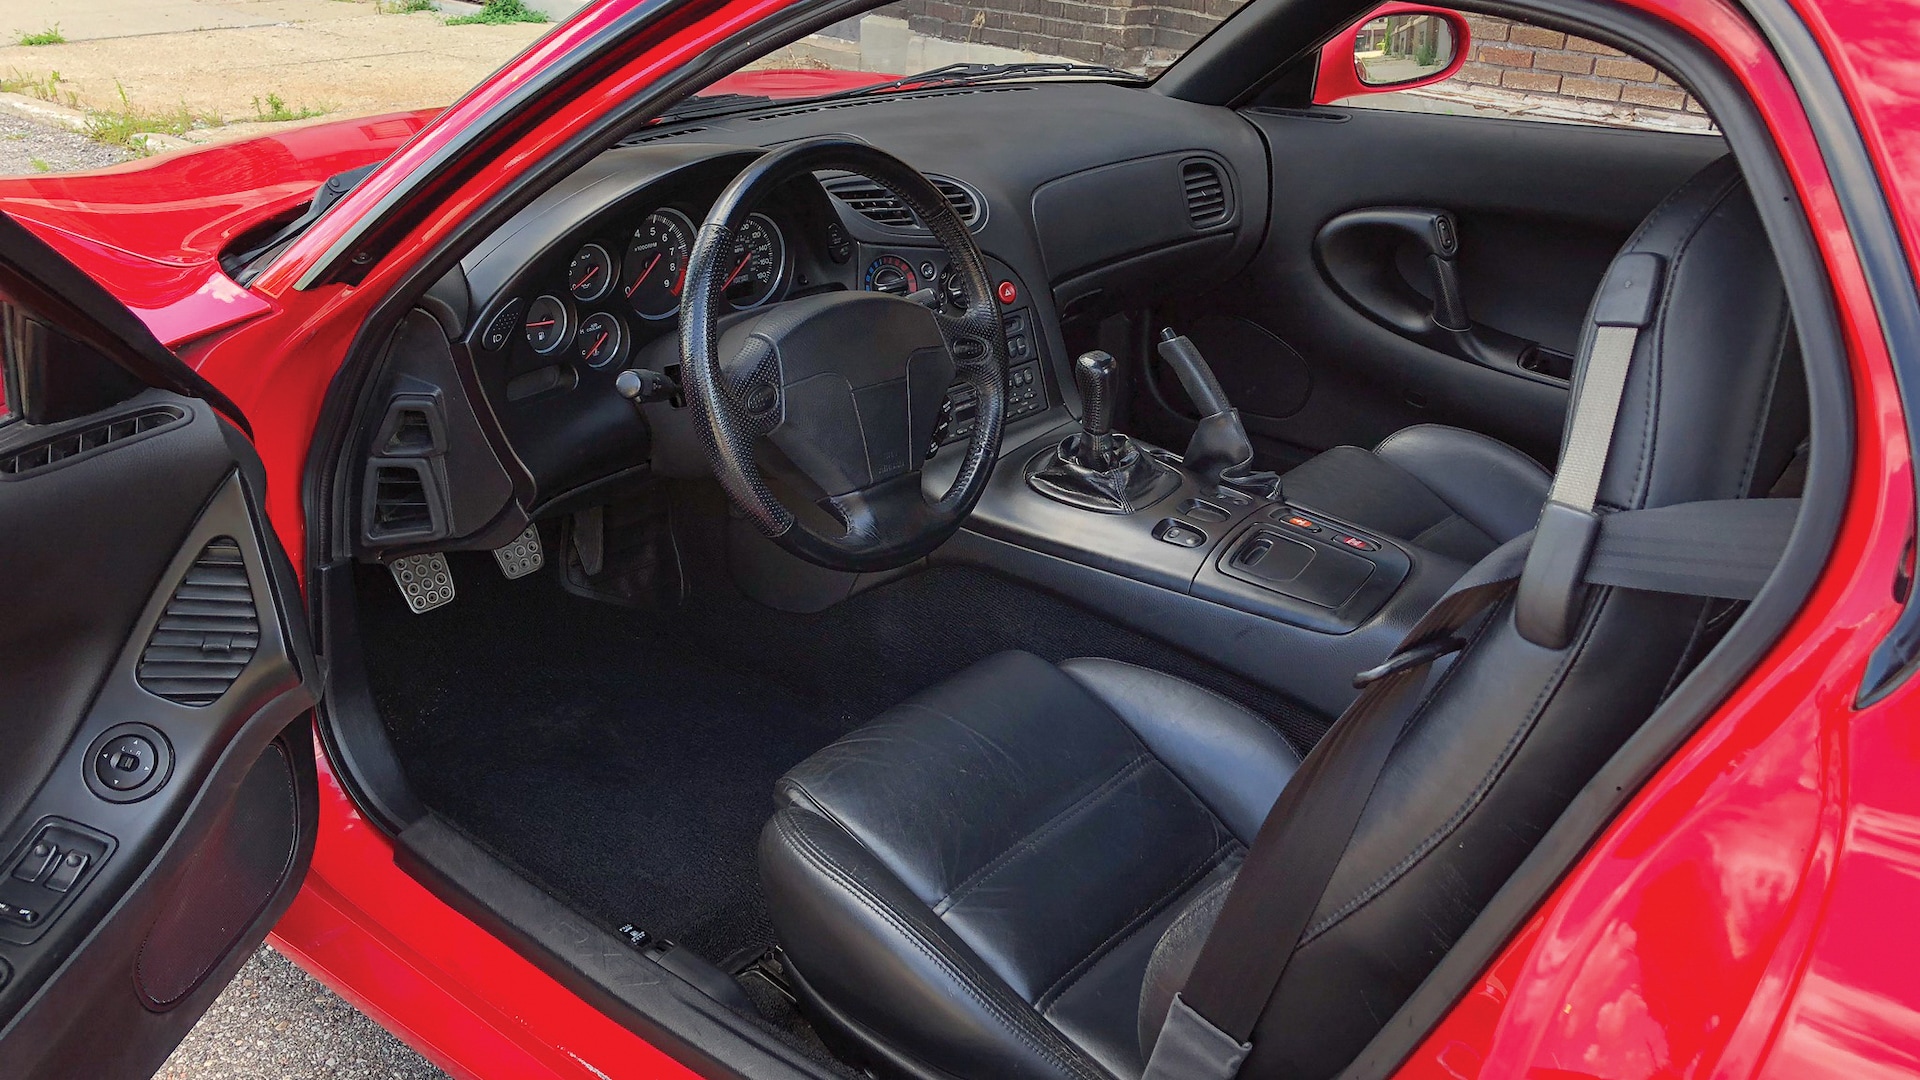 1993 Mazda RX 7 interior